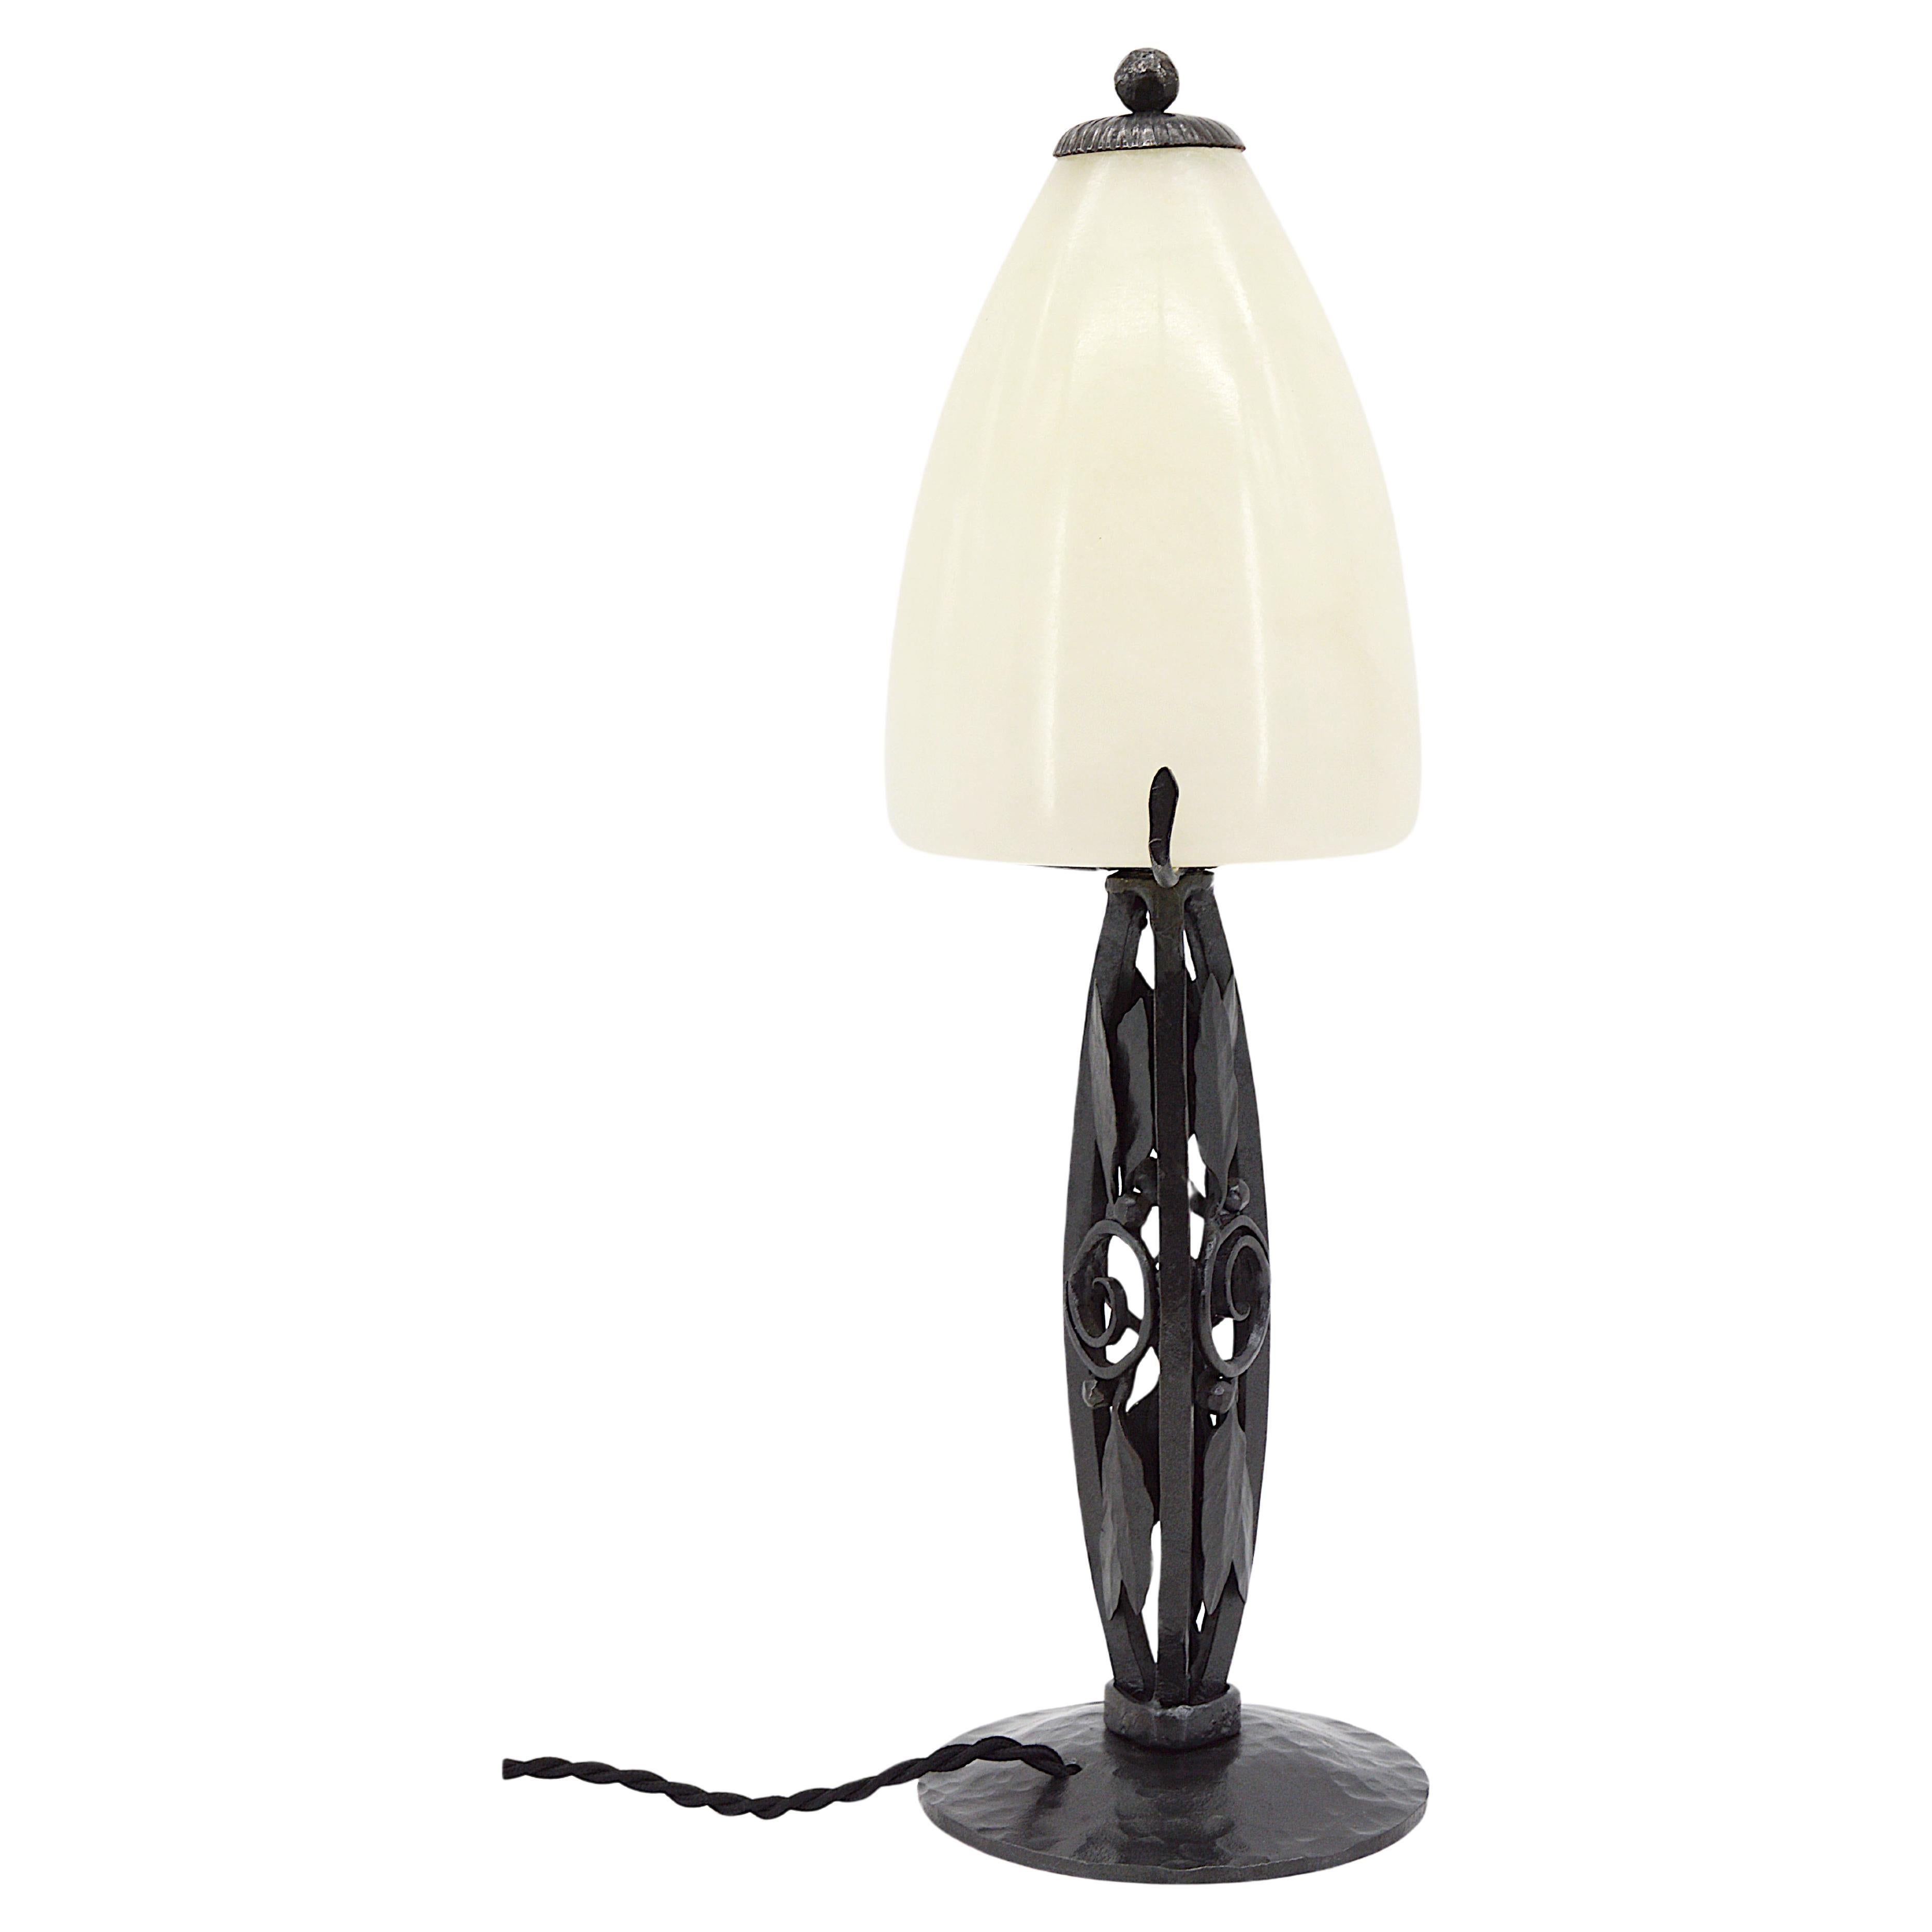 Lampe de table Art déco française, France, années 1920. Le précieux socle est accompagné de son abat-jour en albâtre. Mesures : Hauteur 15